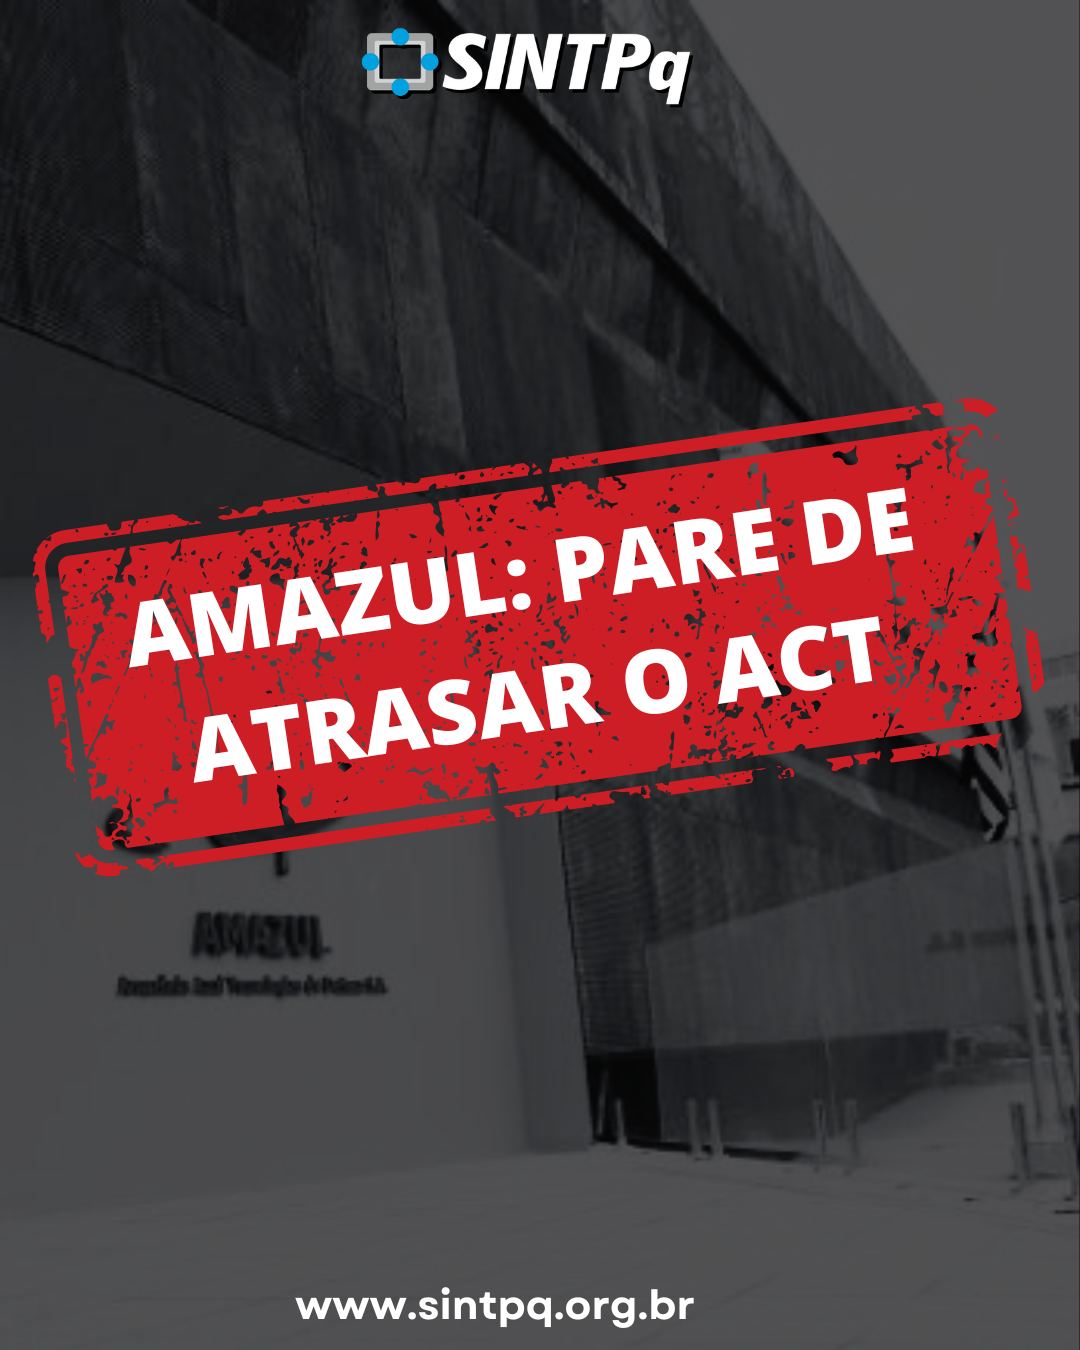 Enquanto no assina novo ACT, Amazul prorroga atual acordo coletivo por mais um ms